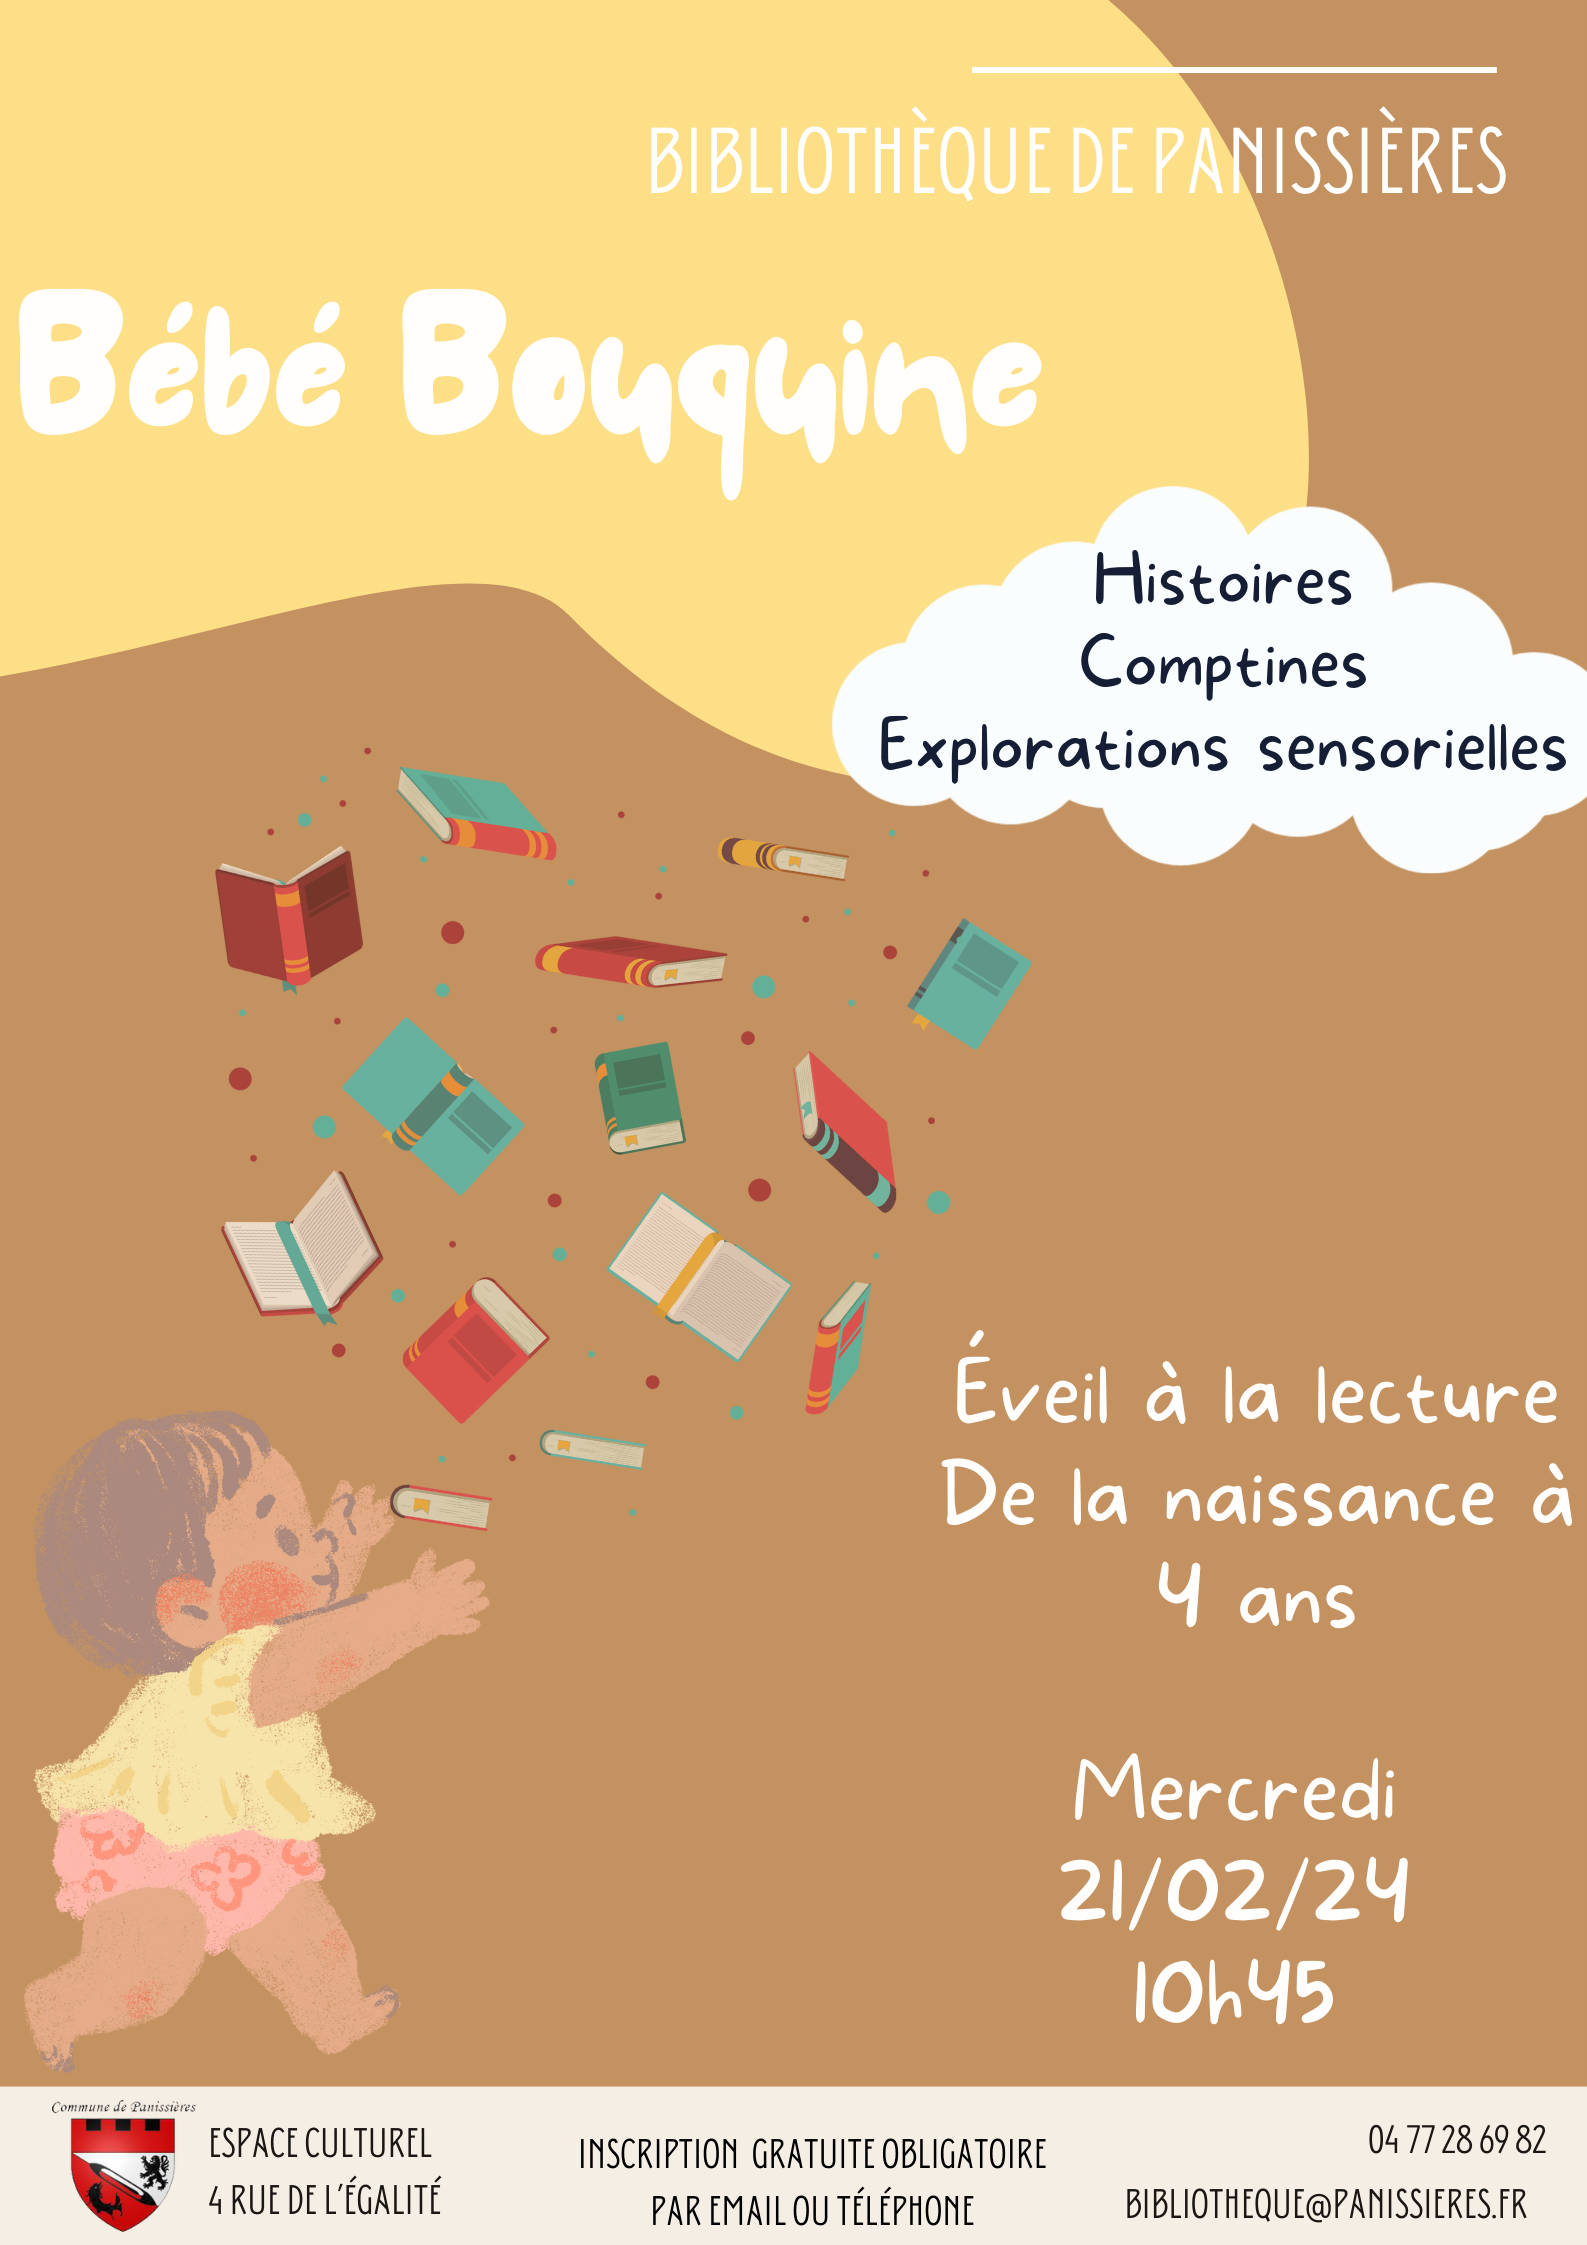 You are currently viewing Le 21 février, Bébé bouquine à la bibliothèque